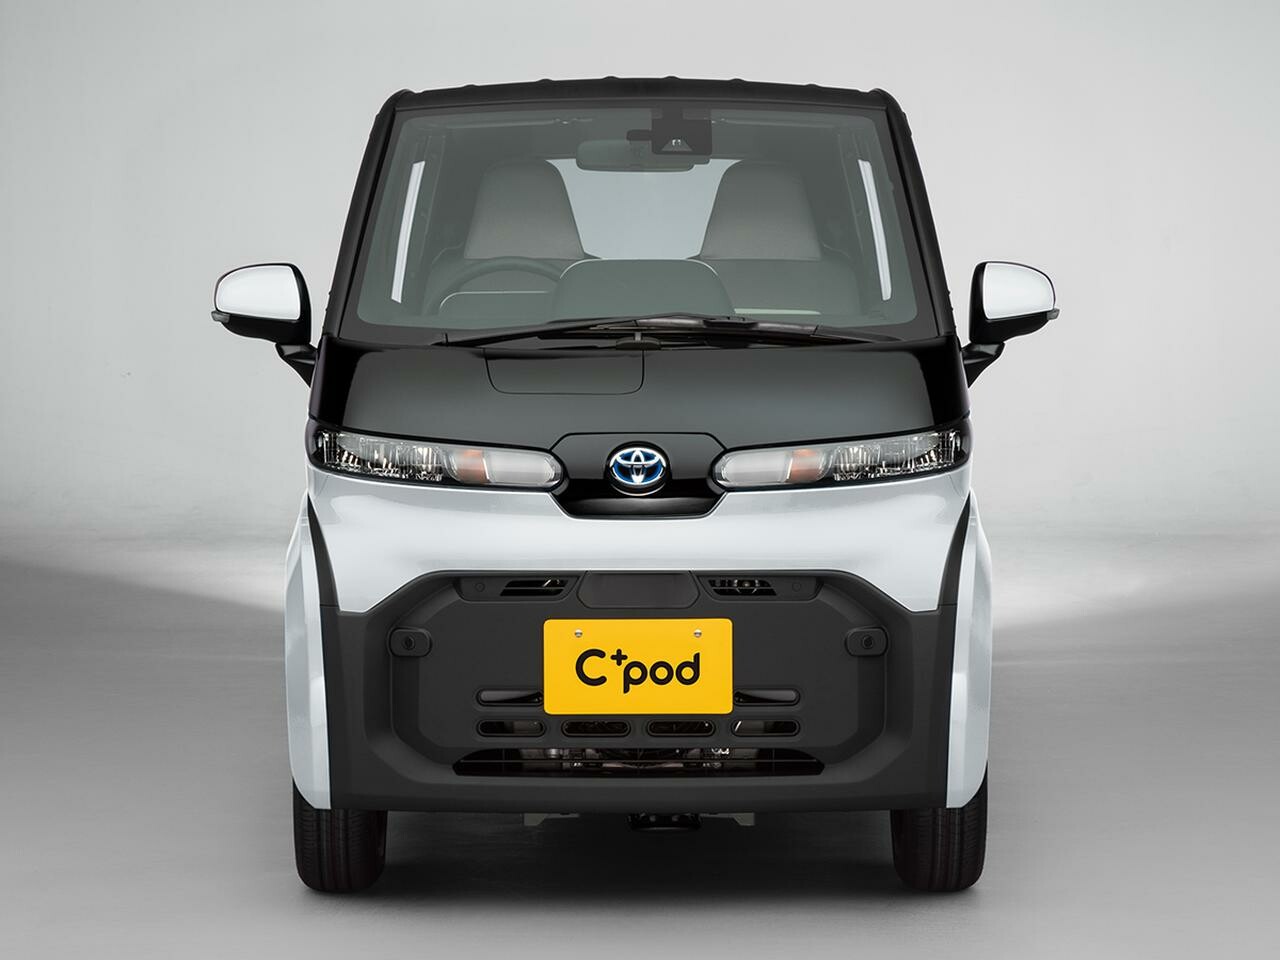 トヨタが超小型EVシーポッド（C+pod）の自治体などへの販売を開始